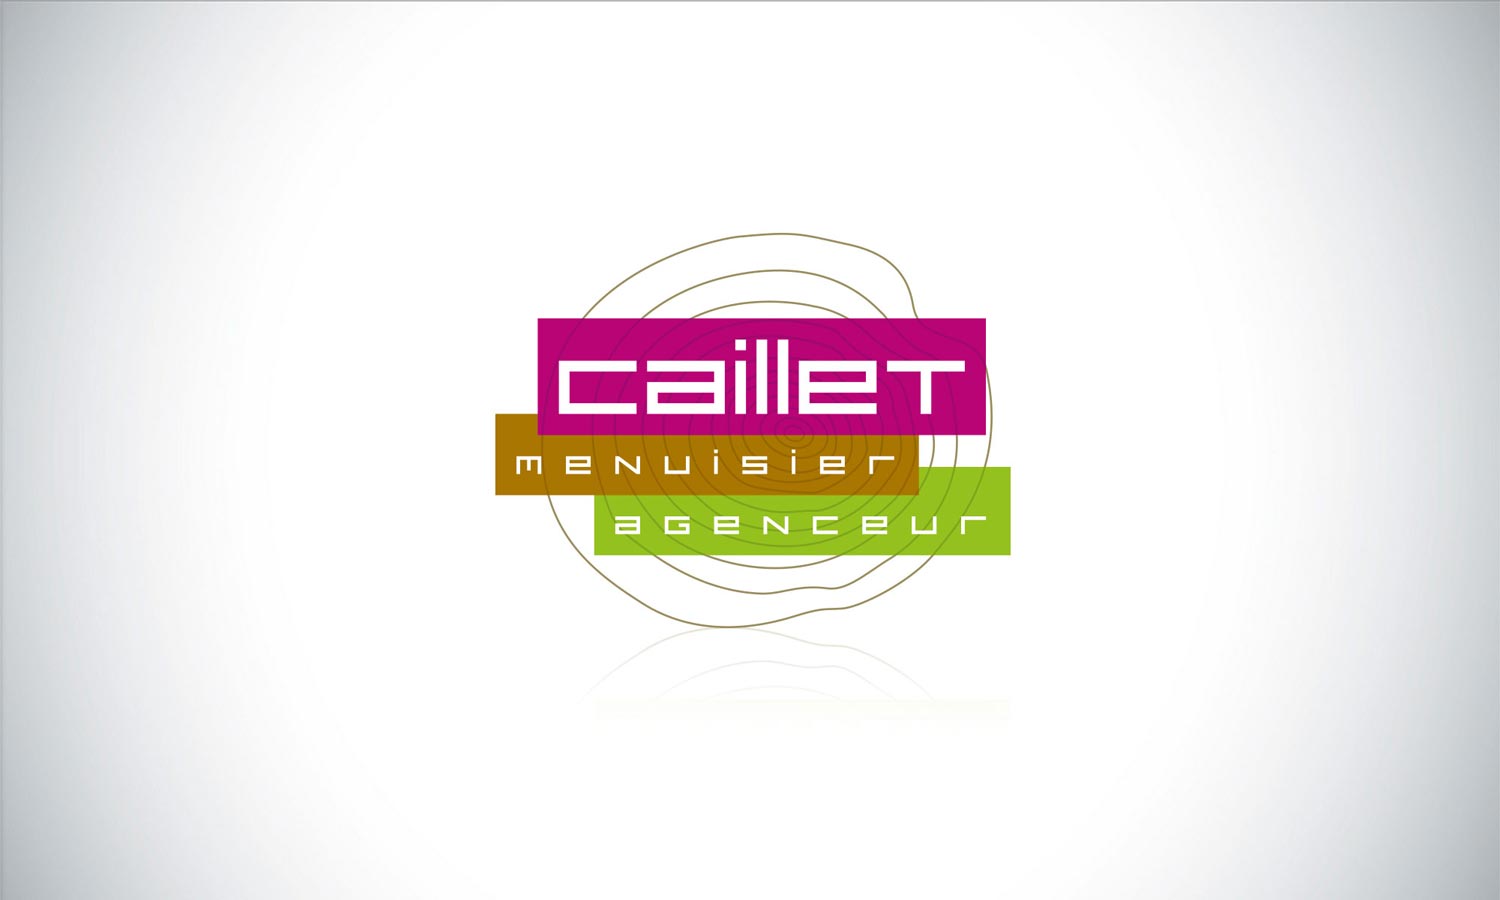 Création du logo de Caillet par graphiste freelance